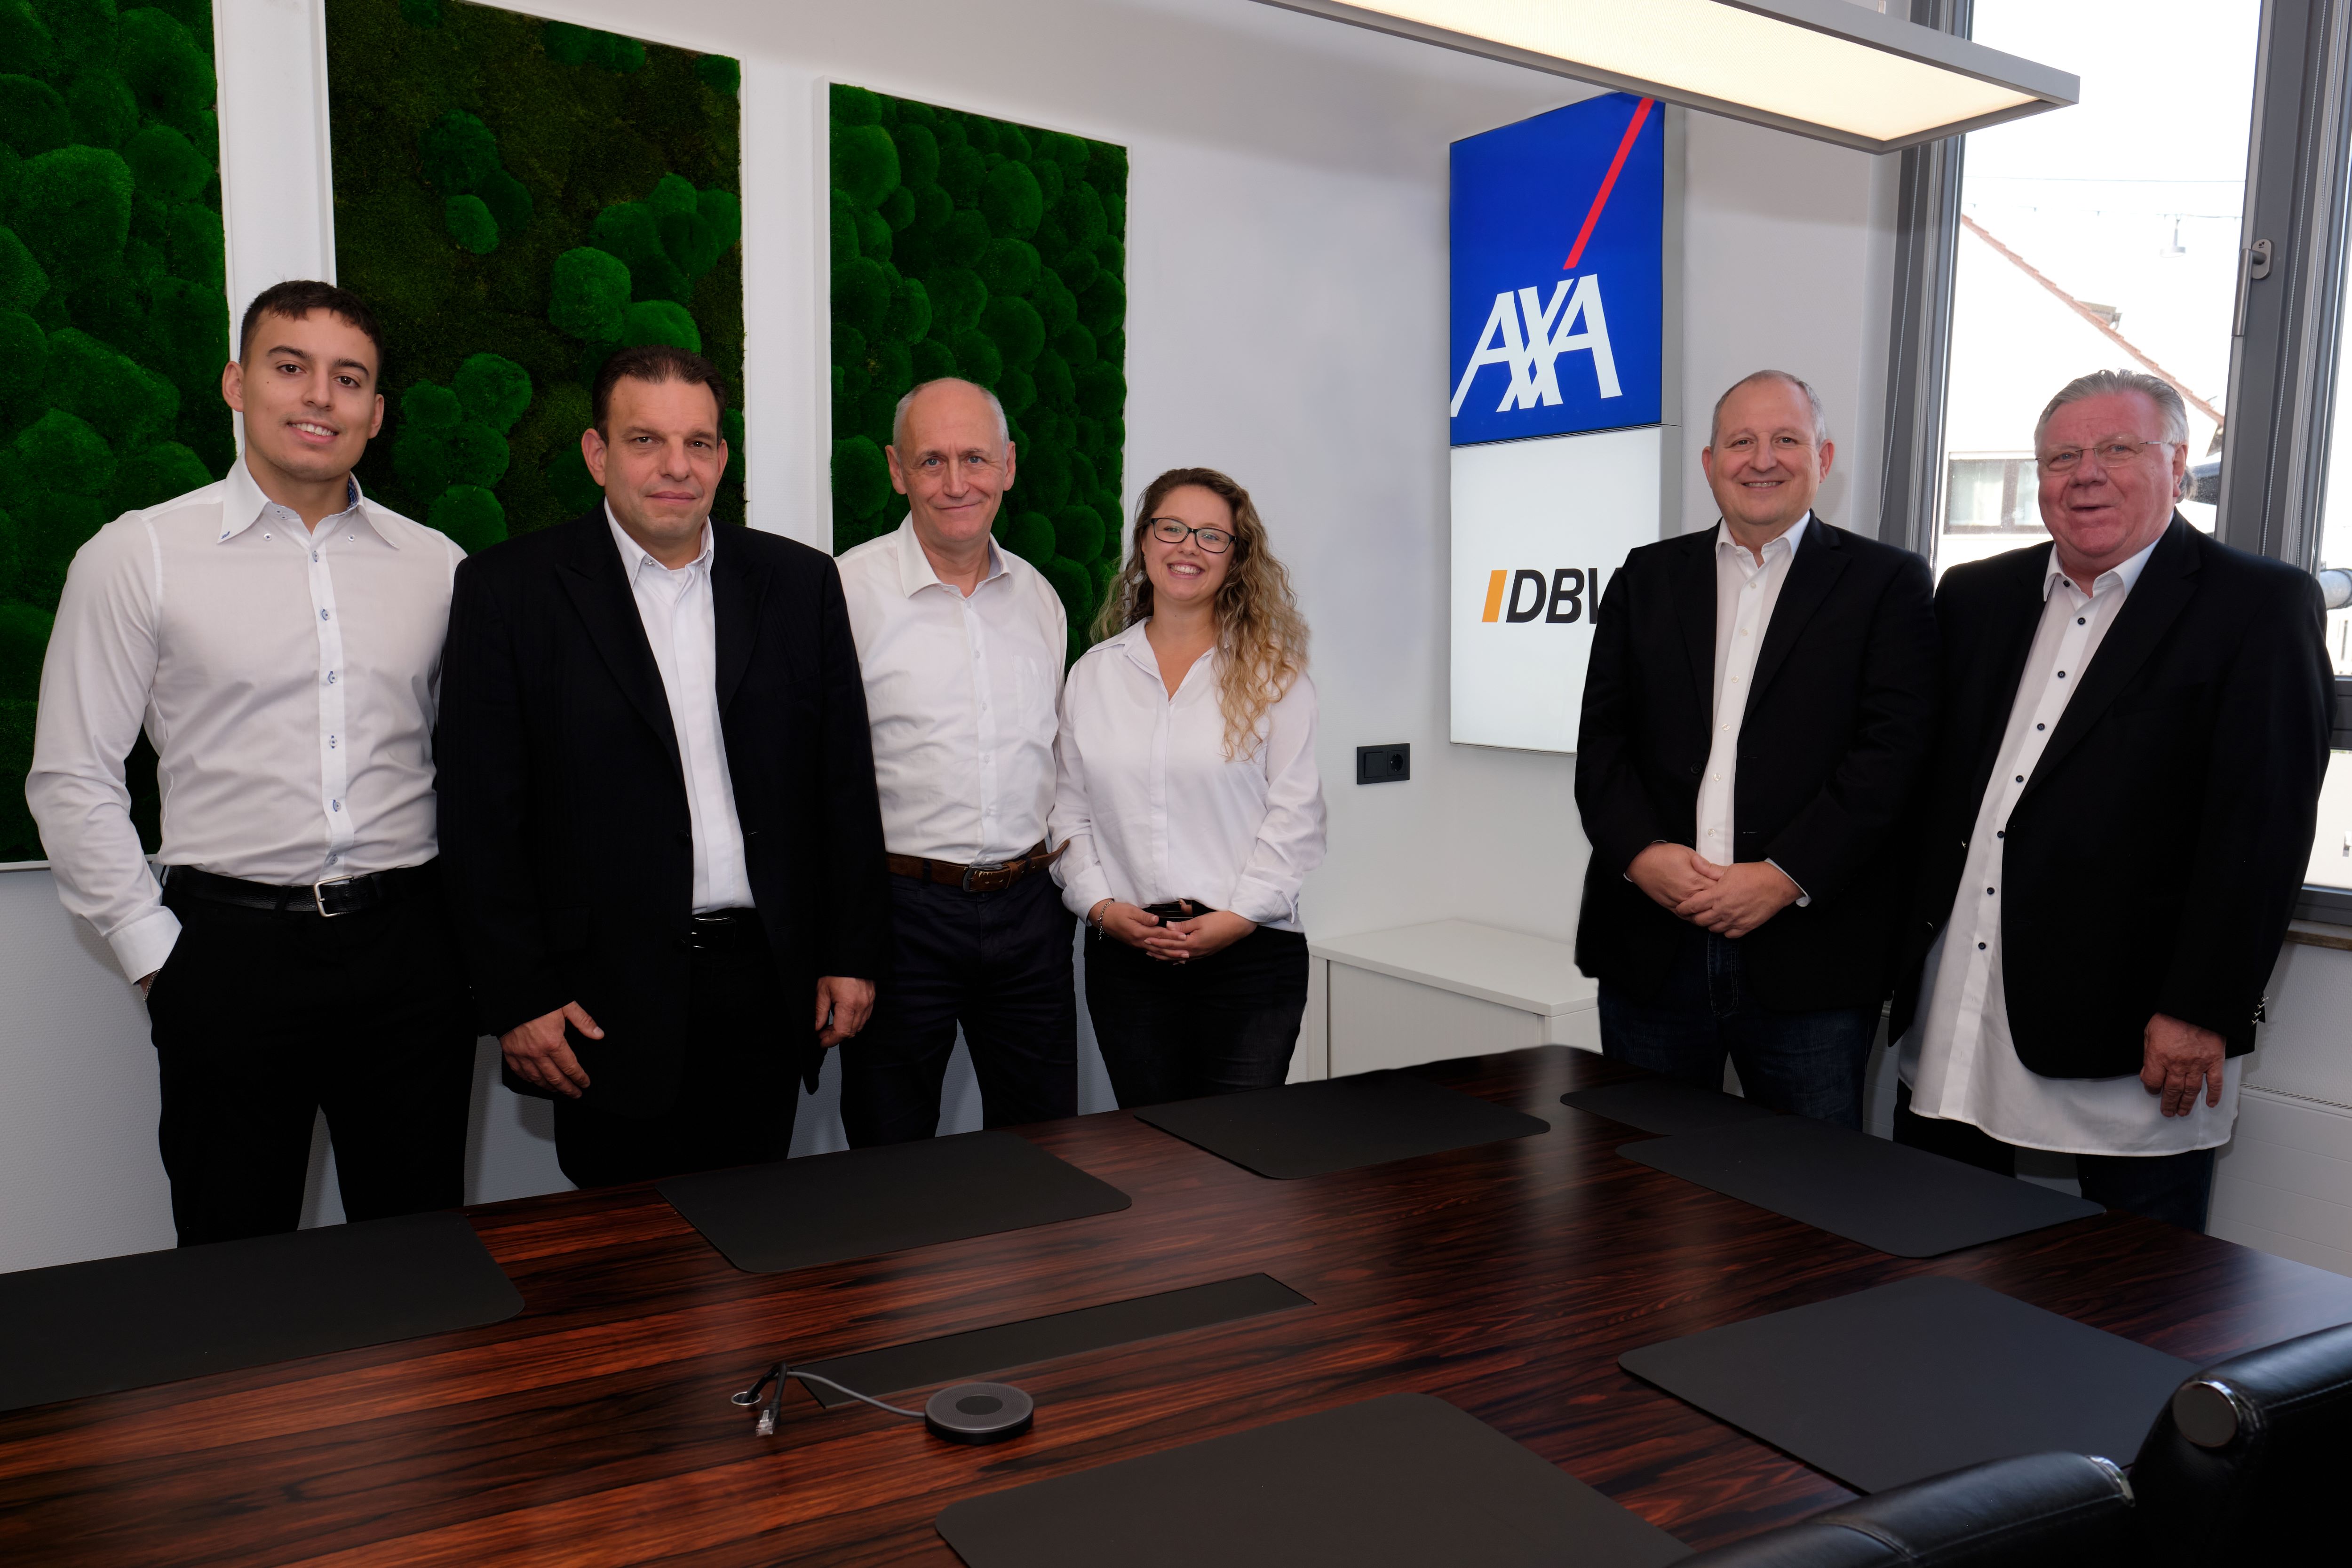 Teamfoto - AXA Agentur Stiefele GmbH - Kfz-Versicherung in Metzingen